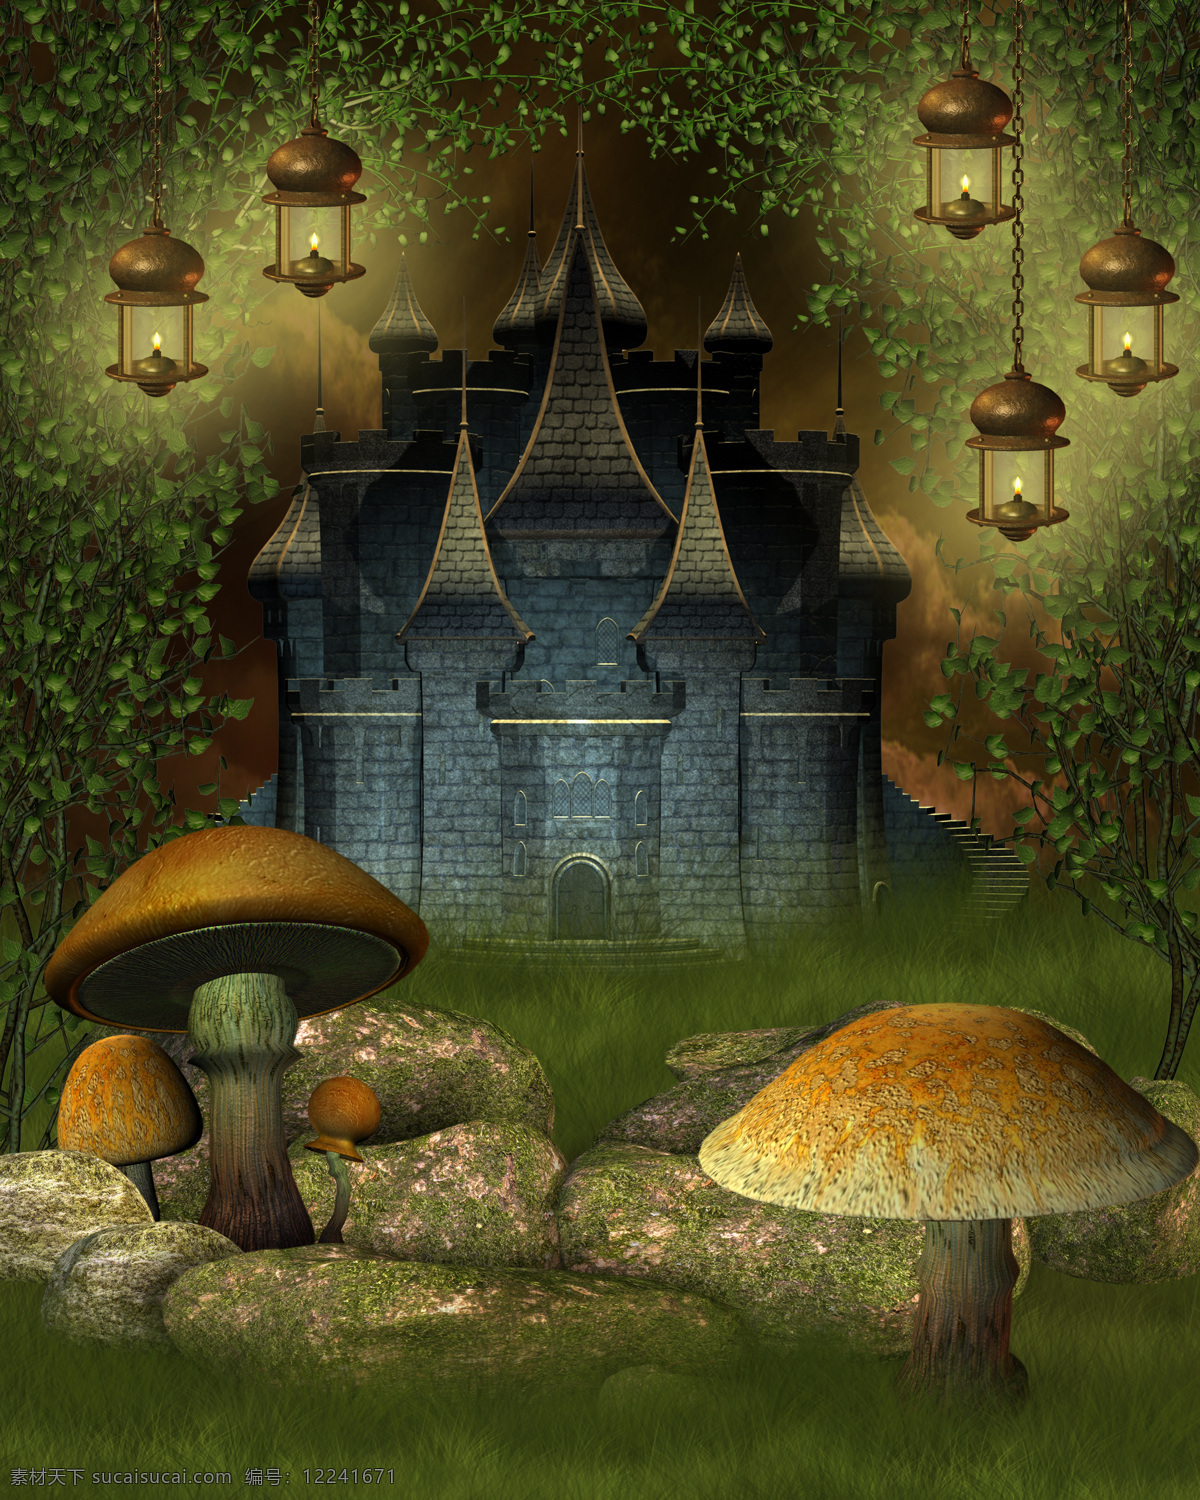 梦幻 城堡 风景 城堡风景 古堡 梦幻风景 蘑菇 自然风景 美丽风景 美景 景色 城堡图片 风景图片